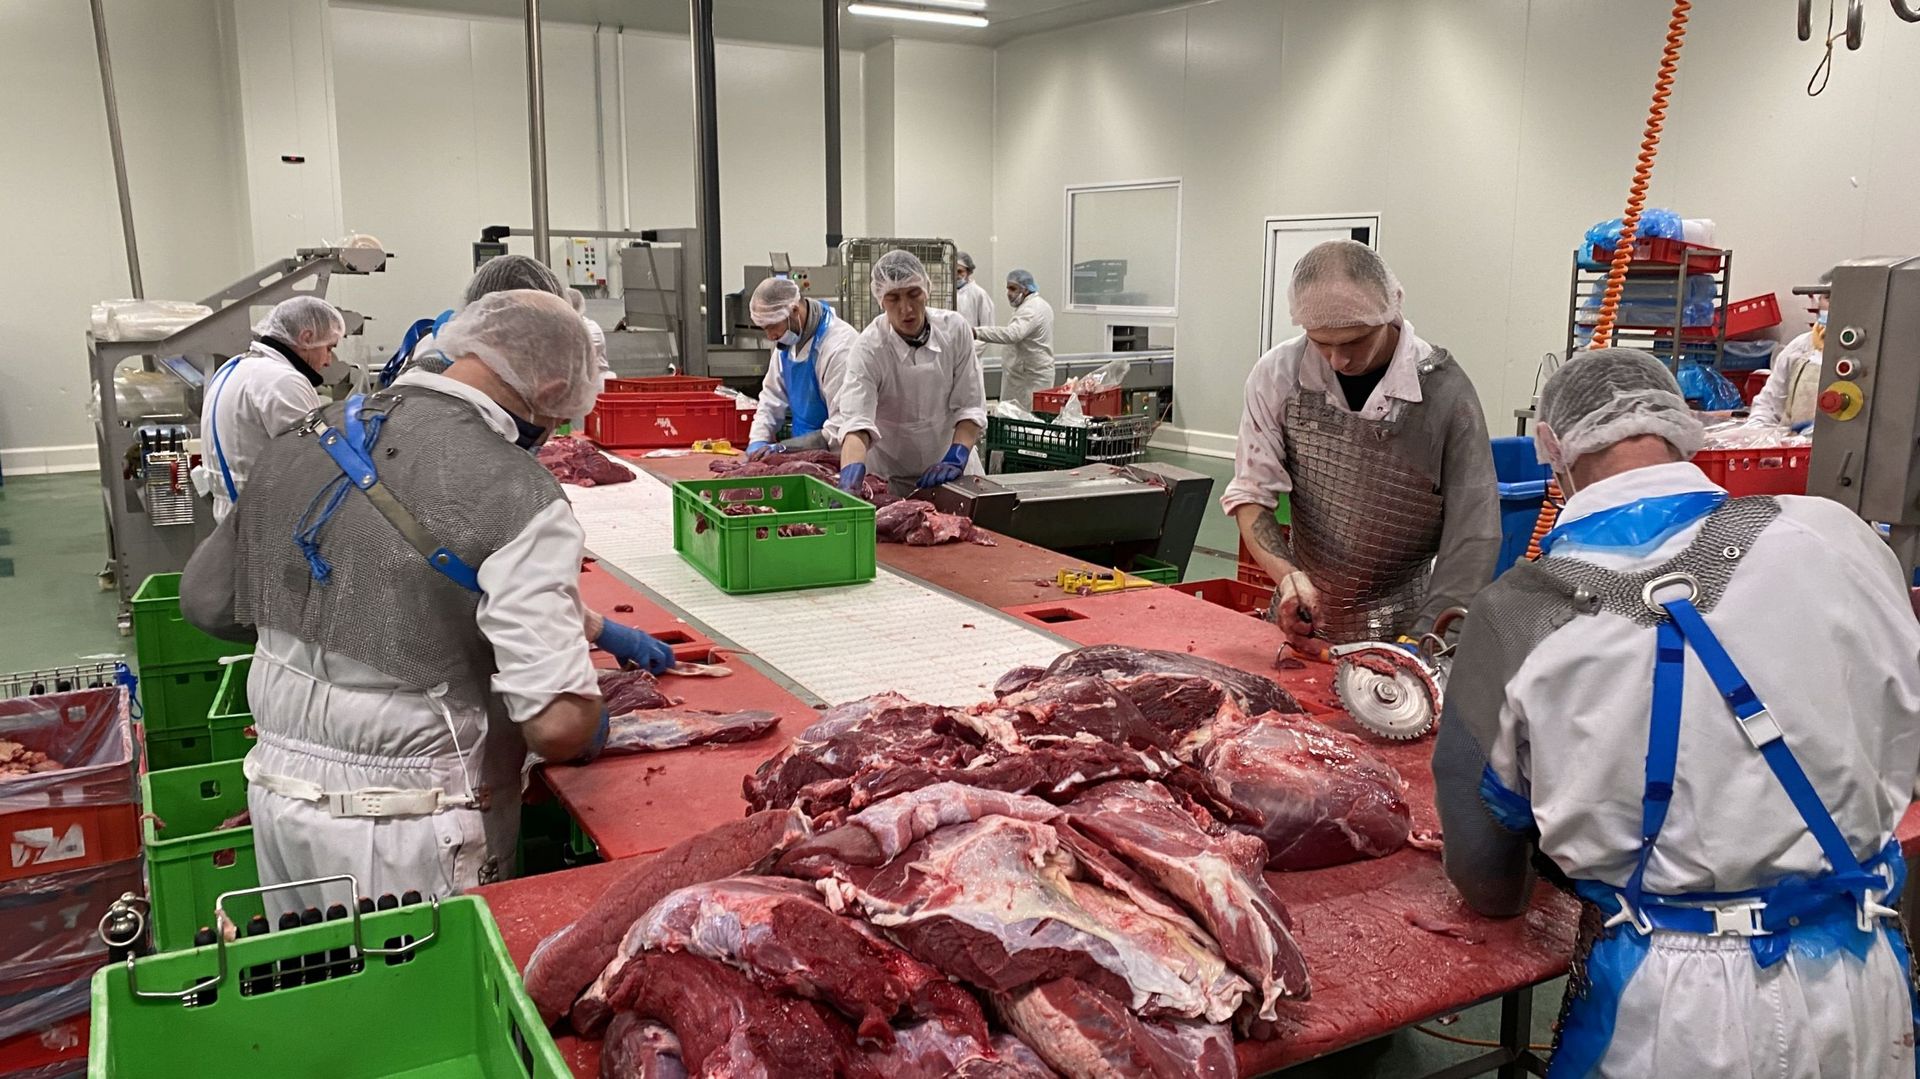 L’atelier de découpe de viande, situé à Perwez, permet à la coopérative de réduire le nombre d’intermédiaires.